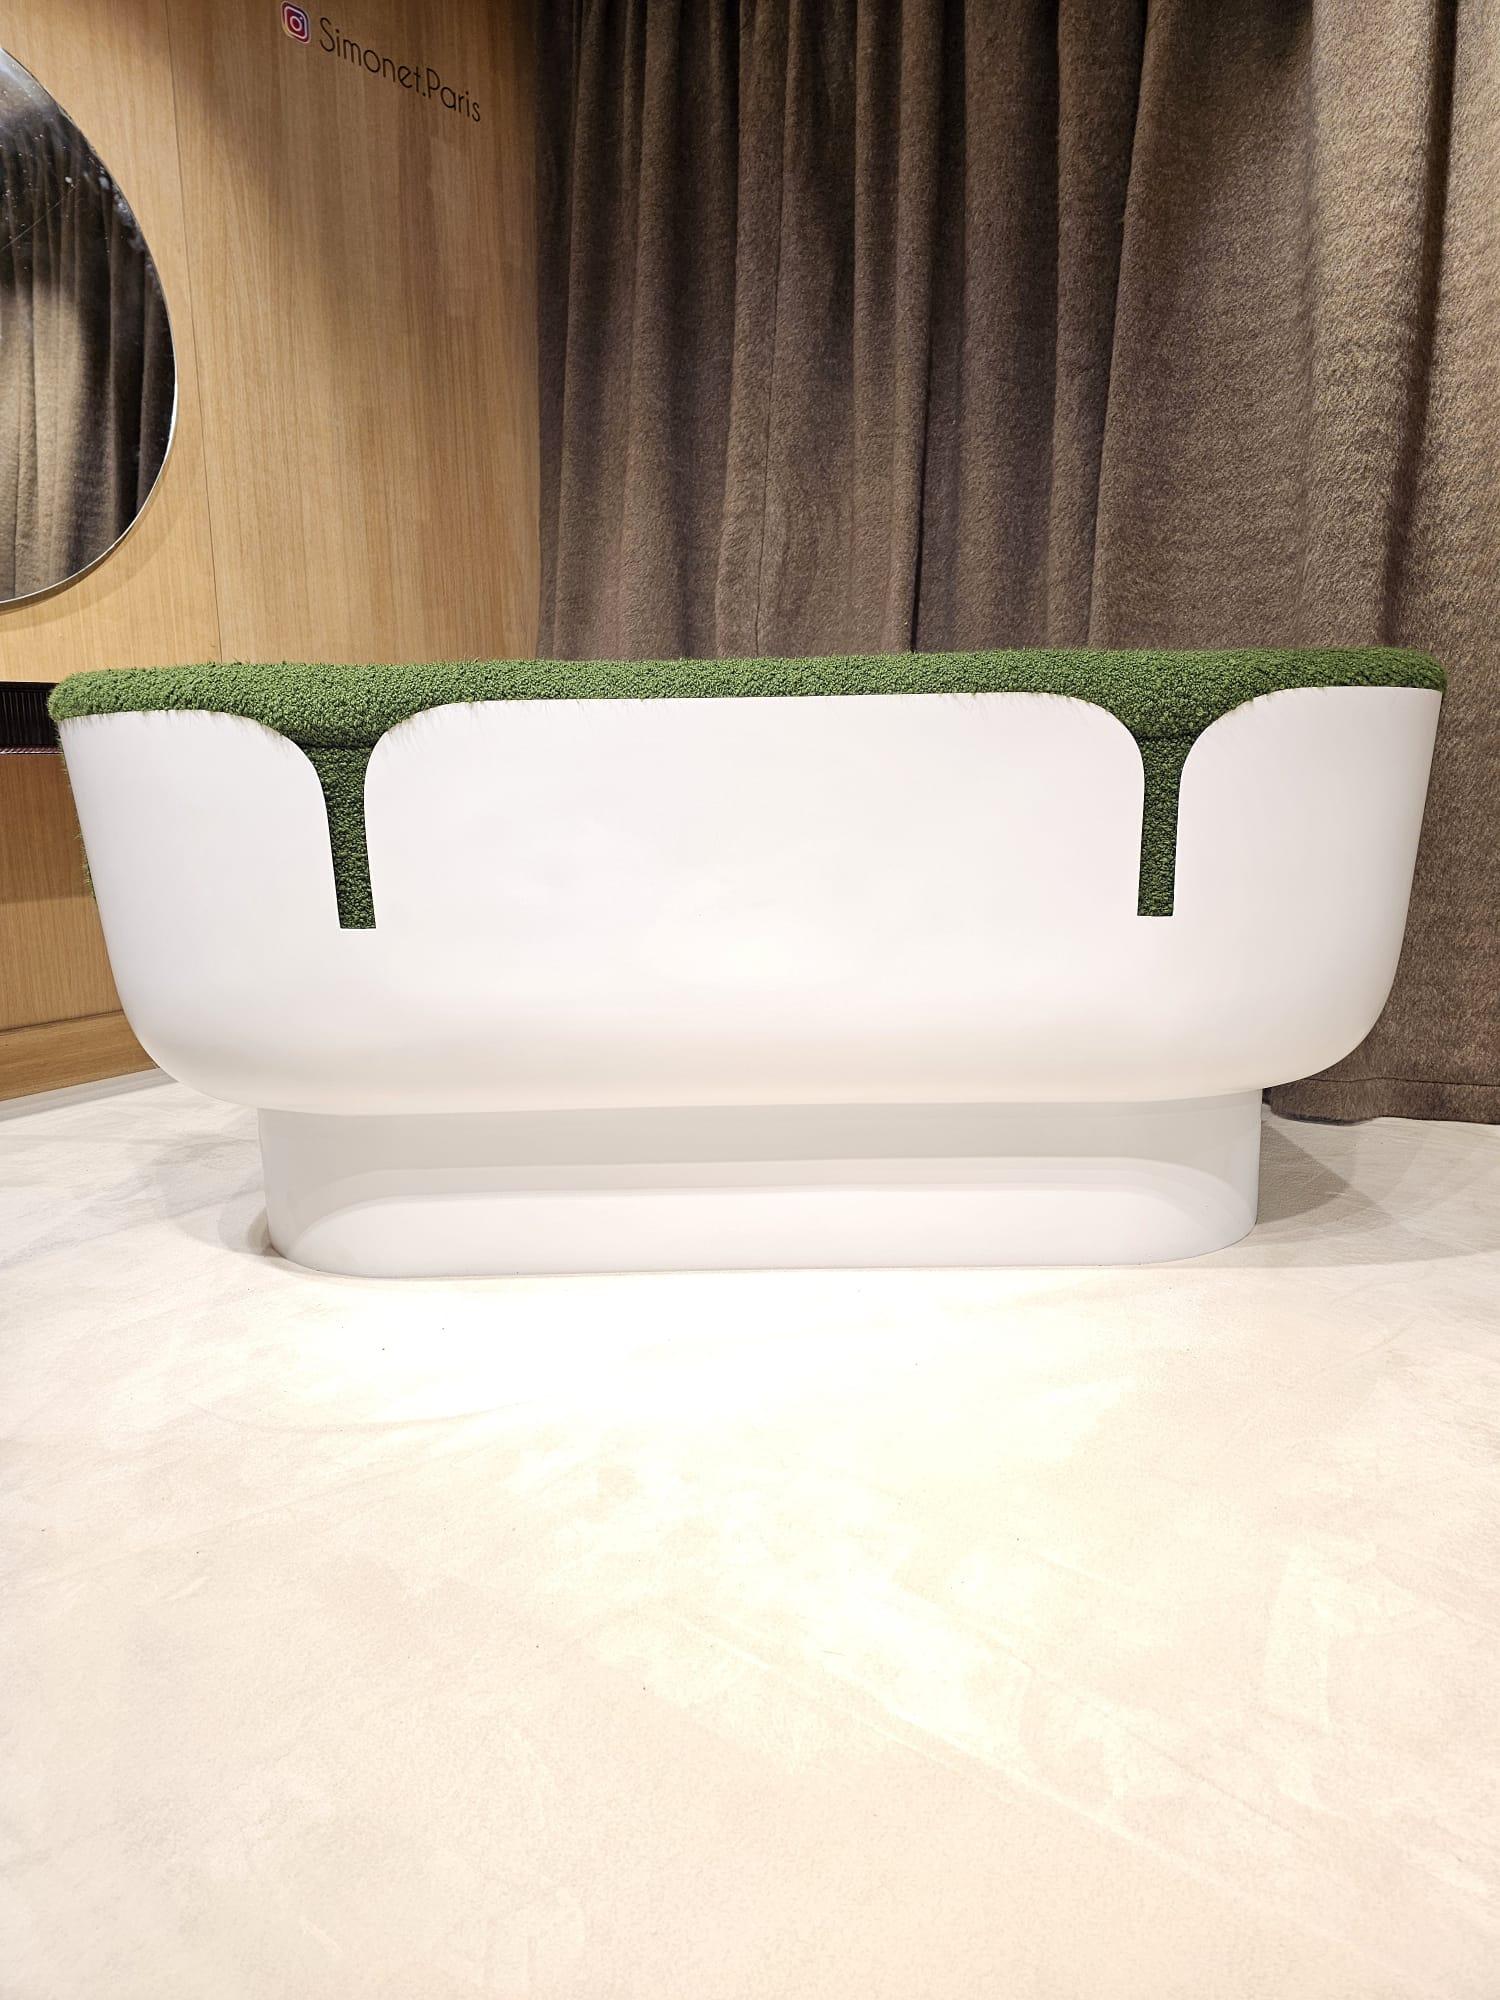 Très beau canapé de Augusto Betti par Habitat international entièrement recouvert en bouclette verte et modernisé
Parfaitierter Laib